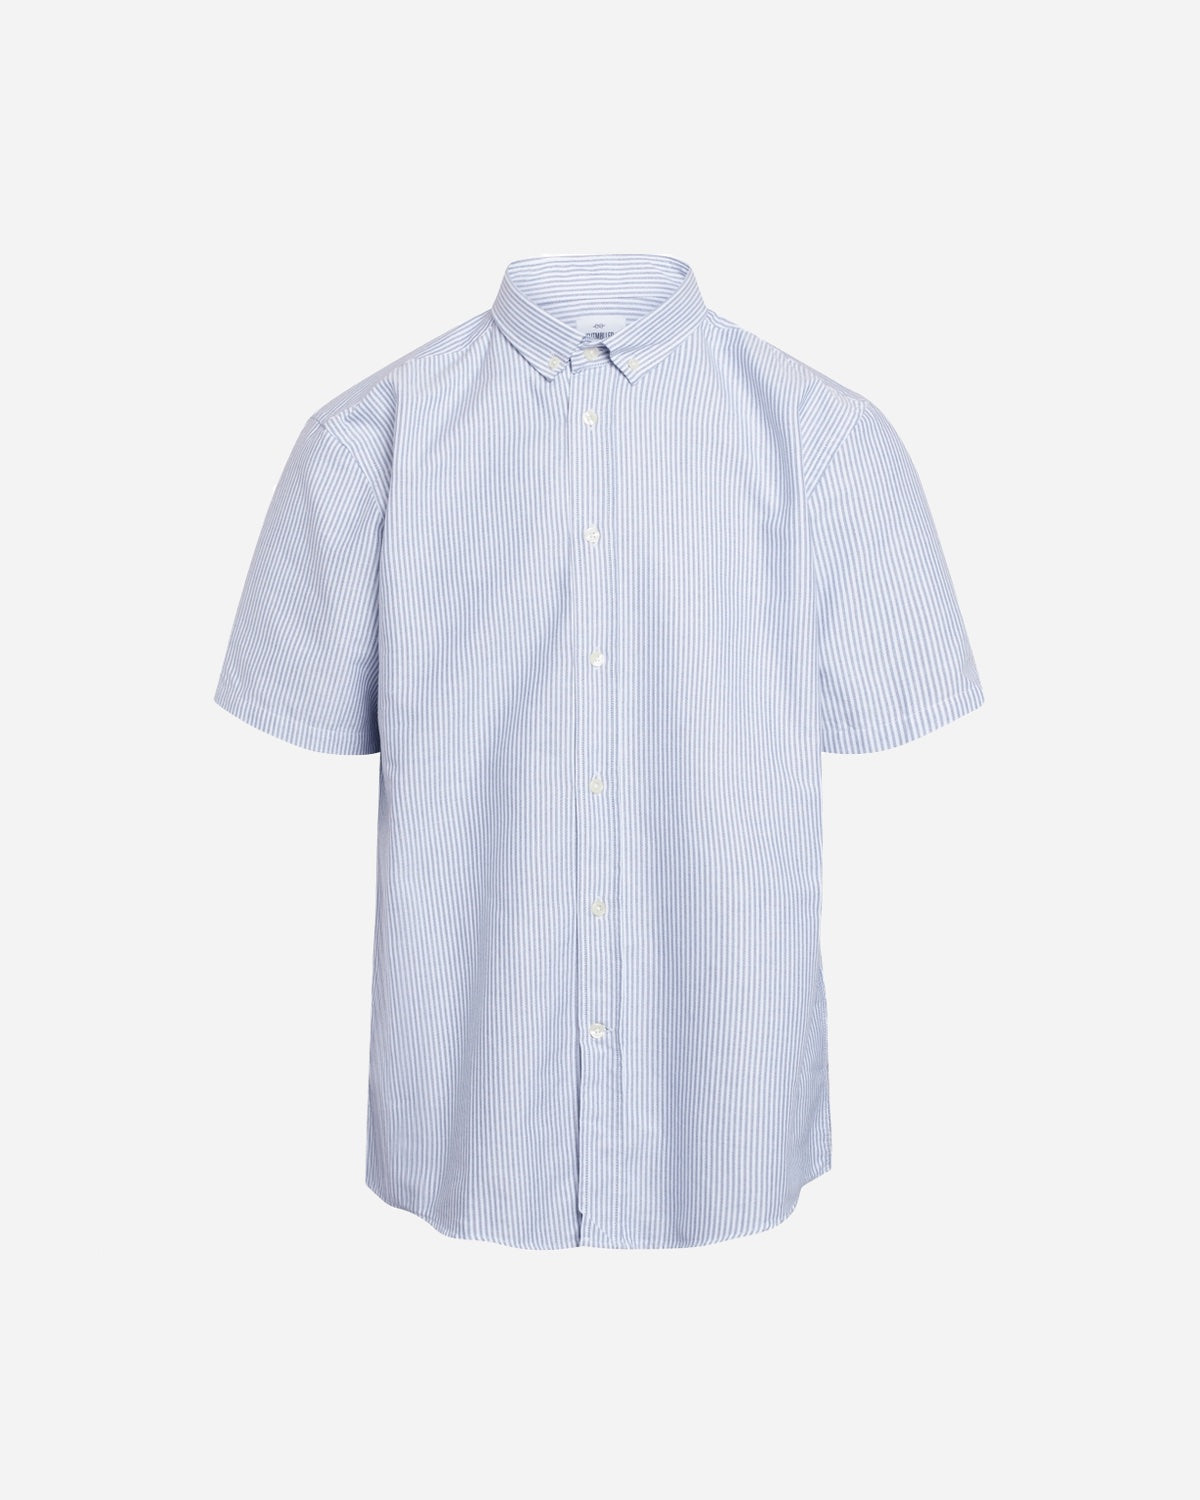 Mikkel Striped Shirt - White/Navy/Ocean